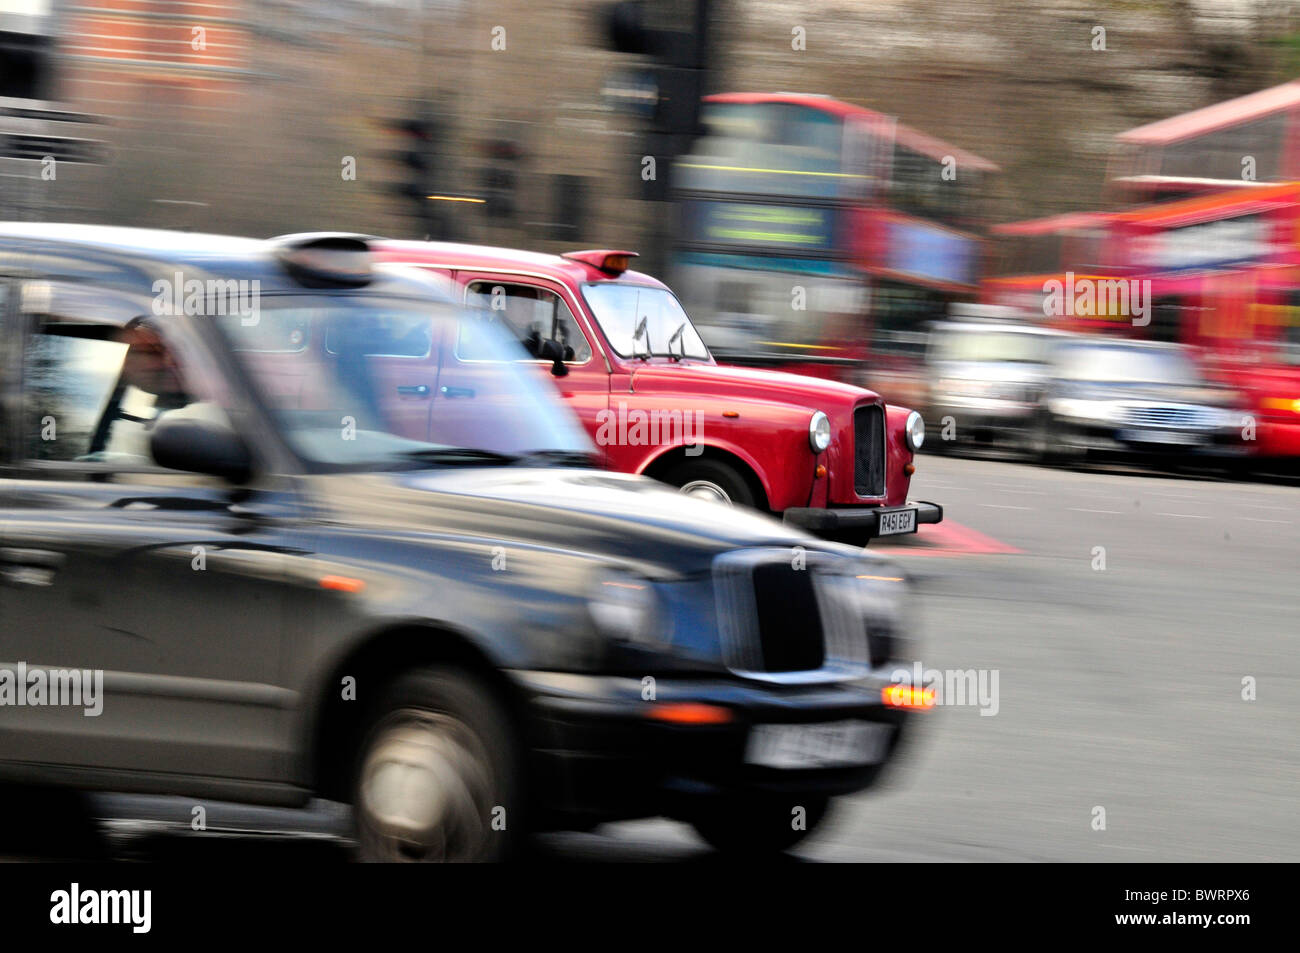 Des taxis près de Knightsbridge, Londres, Angleterre, Royaume-Uni, Europe Banque D'Images